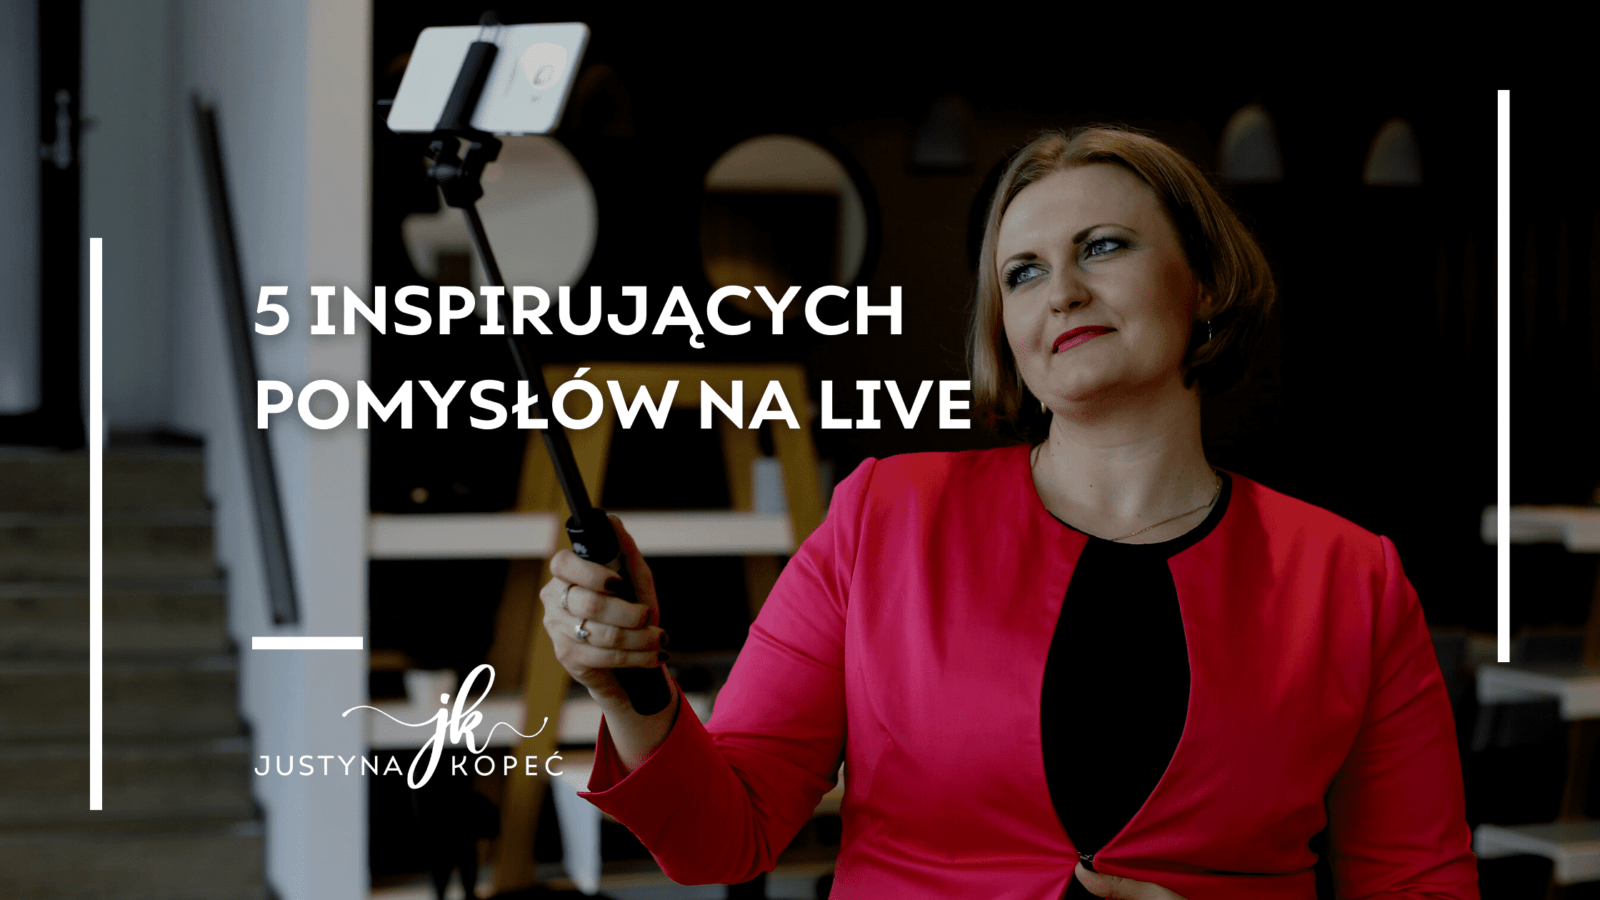 5 inspirujących pomysłów na live Justyna Kopeć blog artykuł